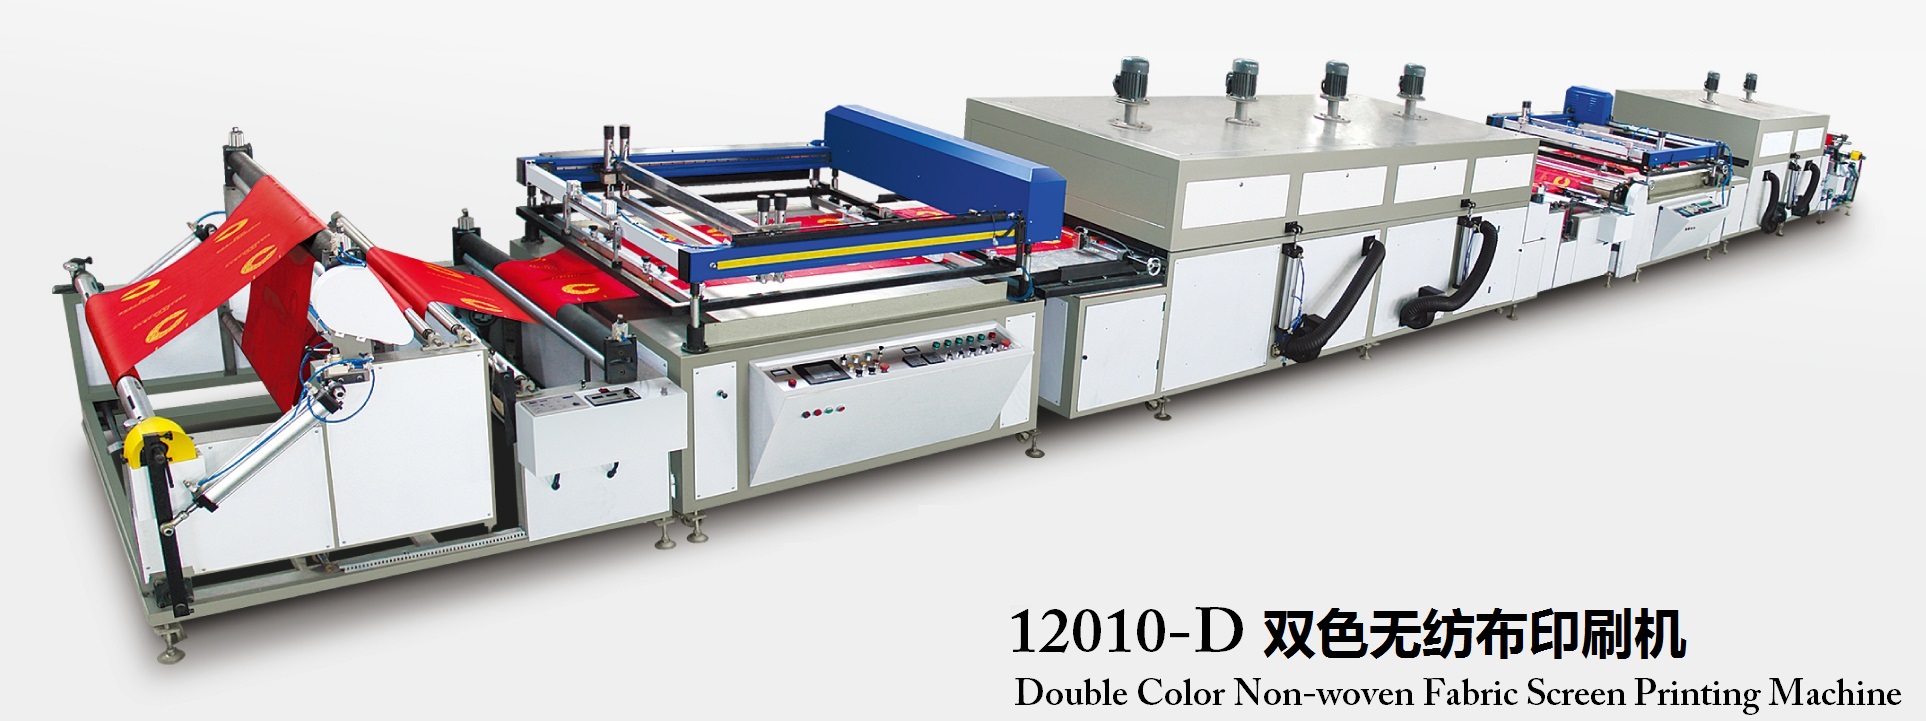 PNWF-12010D 全自动卷对卷双色无纺布丝网印刷机